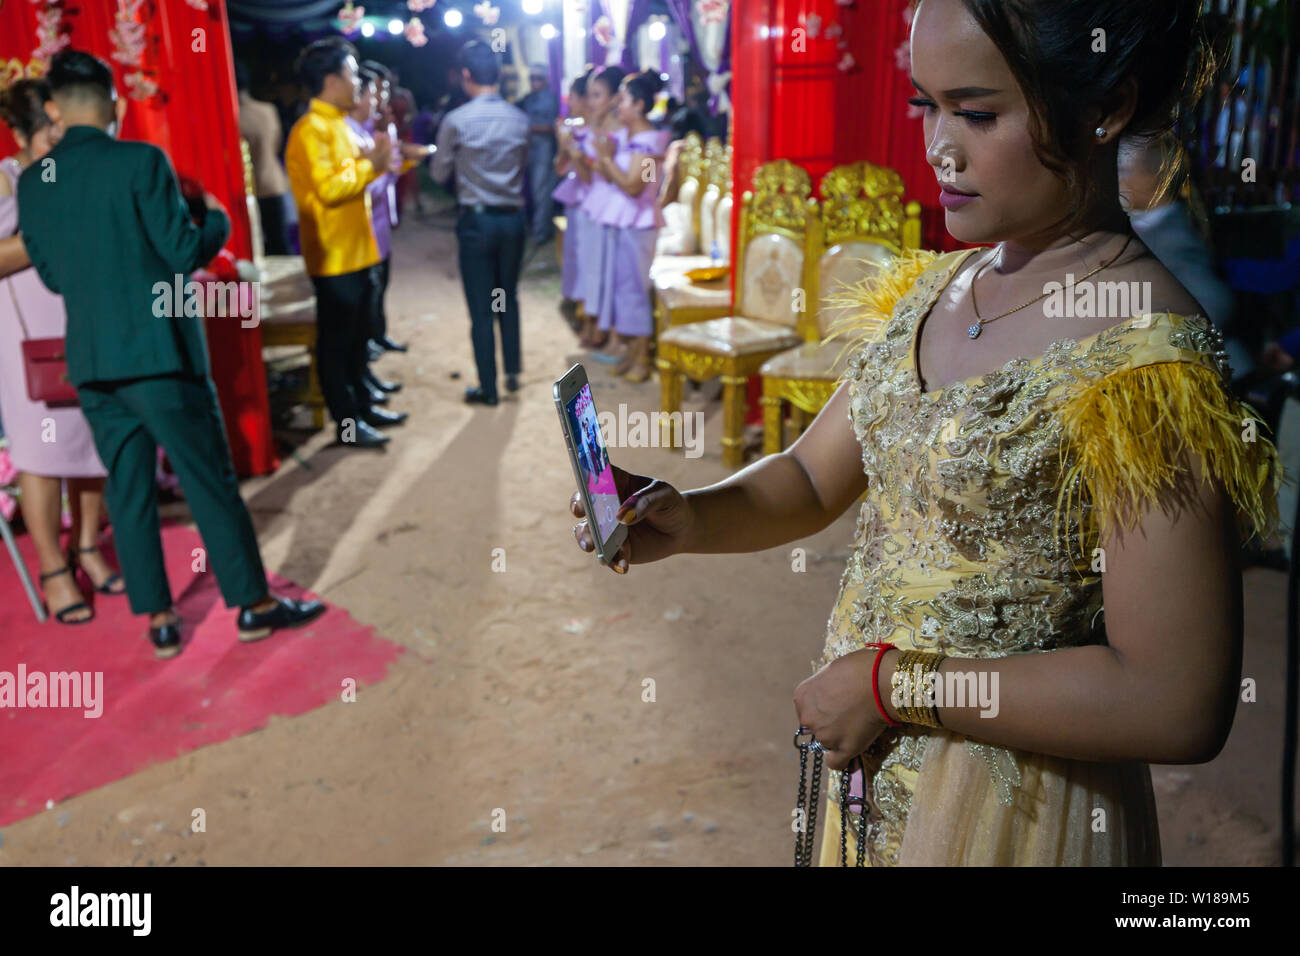 Una joven camboyana vistiendo un traje tradicional Khmer toma una fotografía con un teléfono inteligente en una boda en Siem Reap, Camboya. Foto de stock